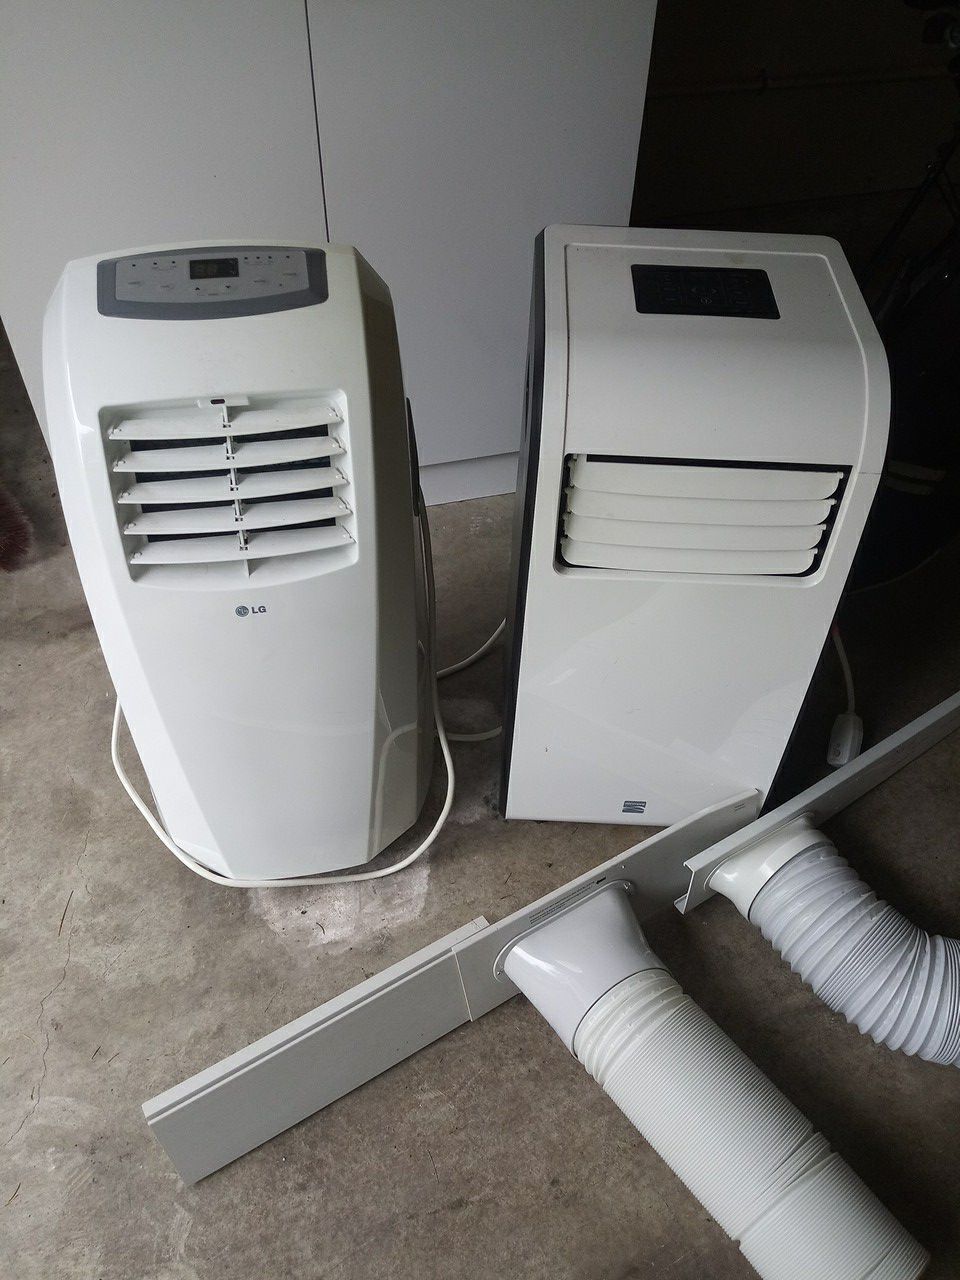 2 portable AC units. LG, Kenmore